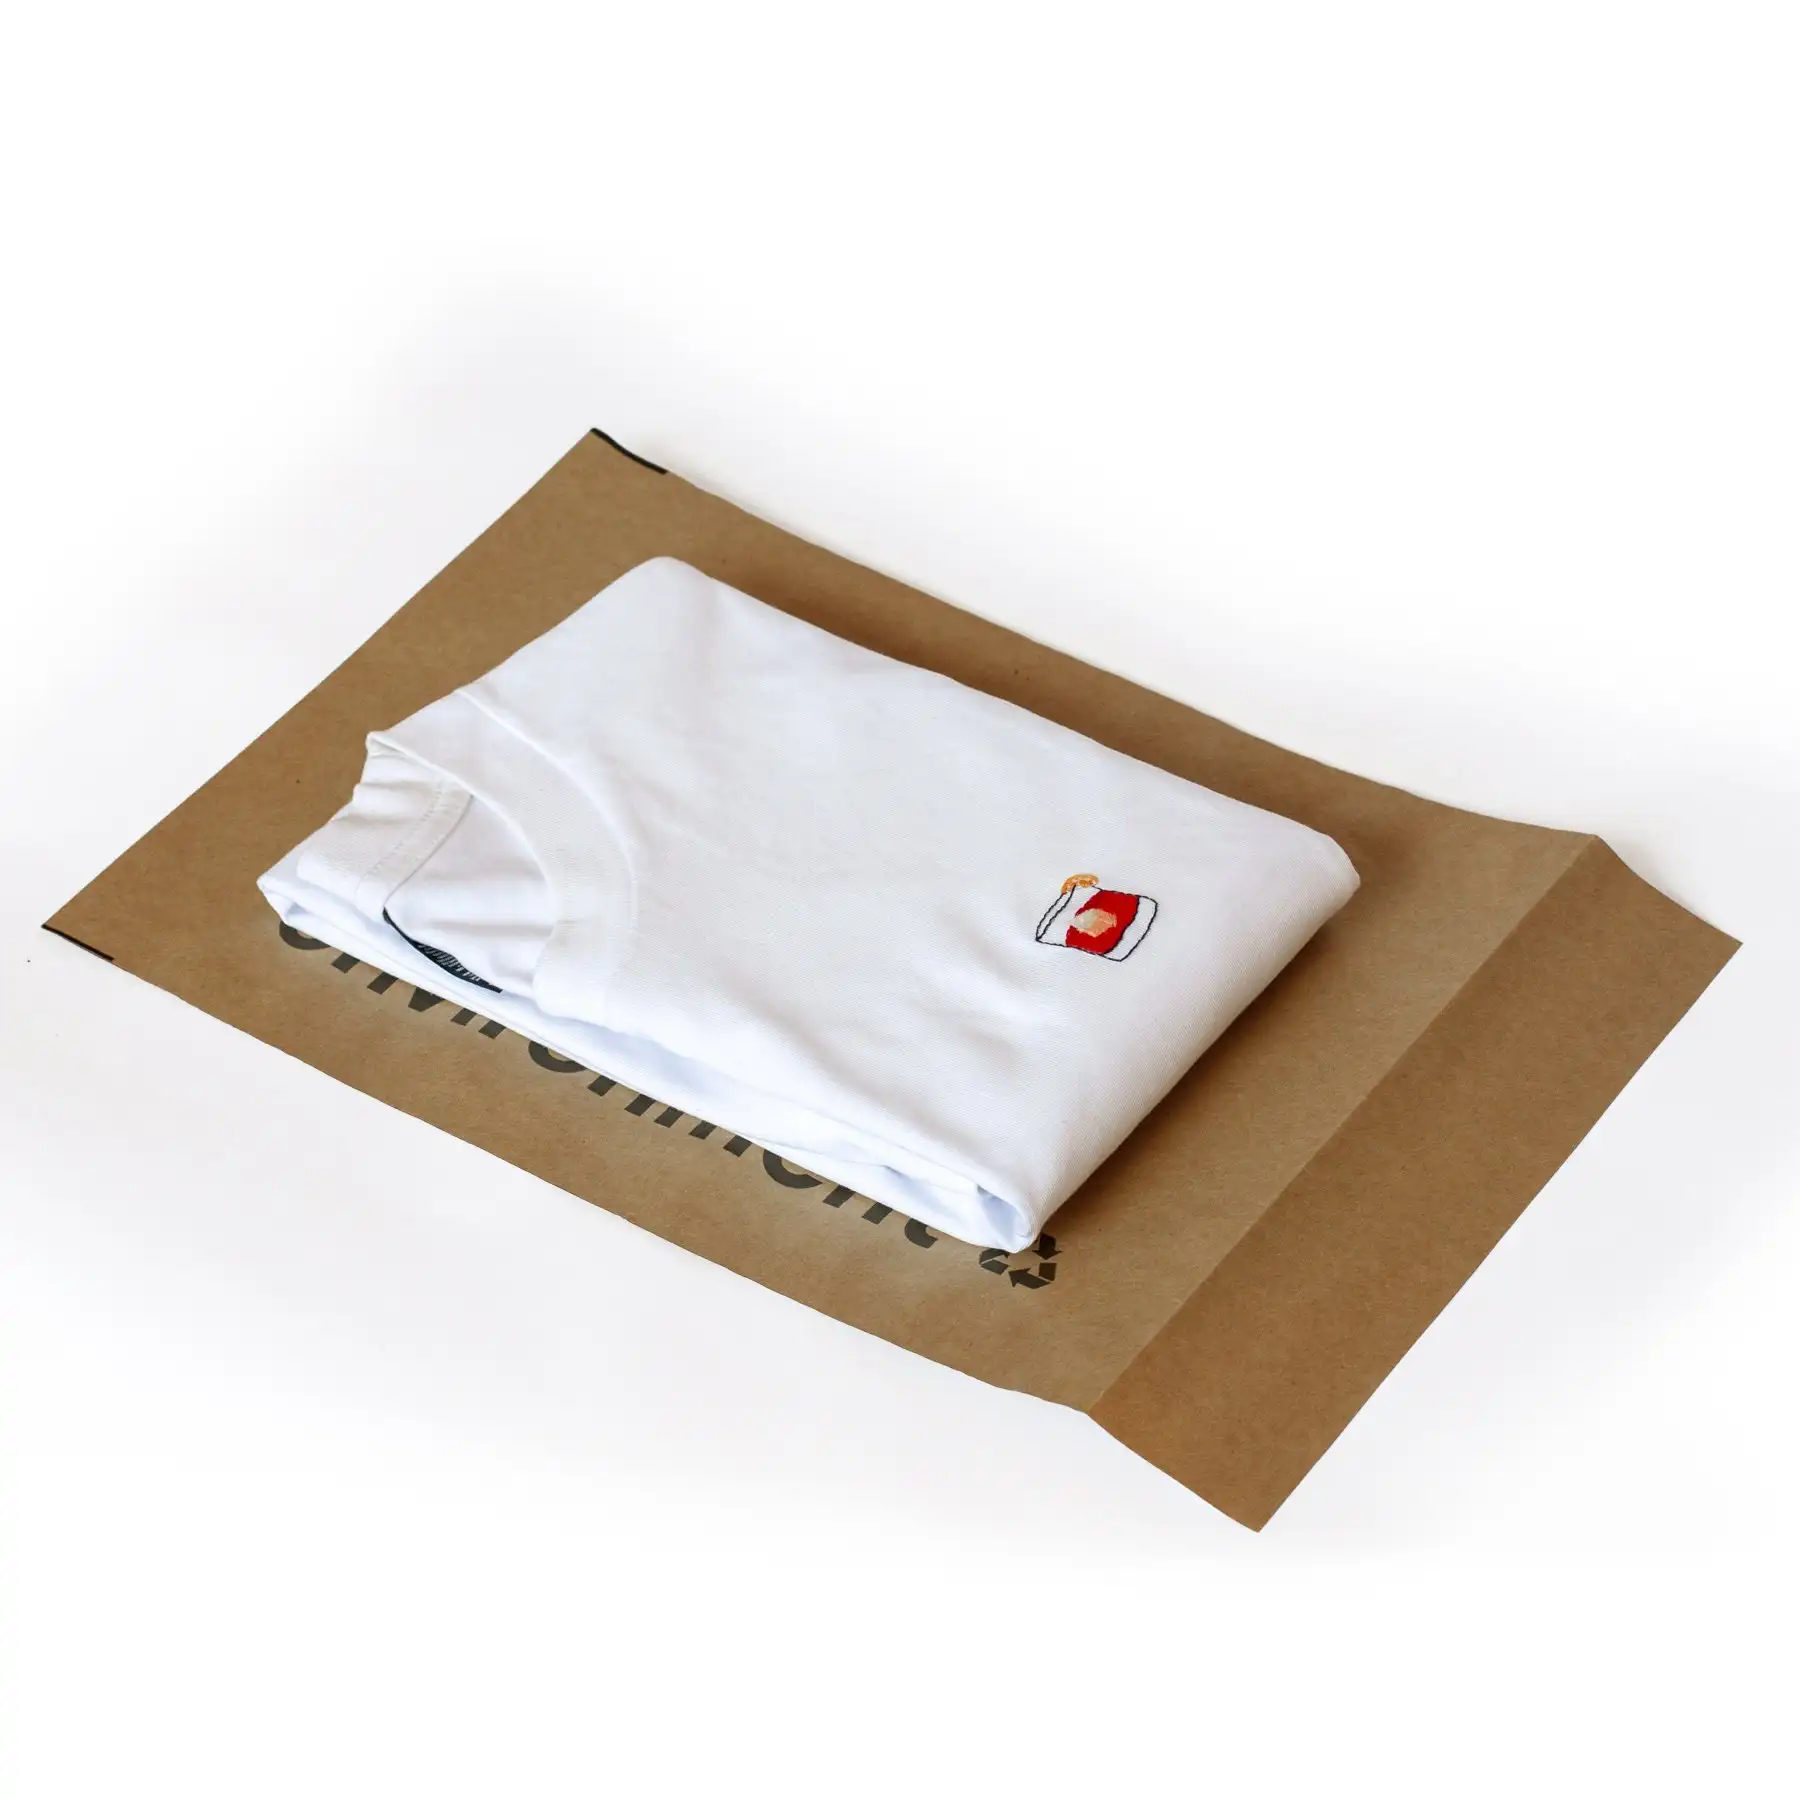 ถุงใส่เสื้อผ้ากระดาษคราฟท์มีกาวขนาด350X250มม. ถุงใส่ซองจดหมายเพื่อความปลอดภัยในการจัดส่ง